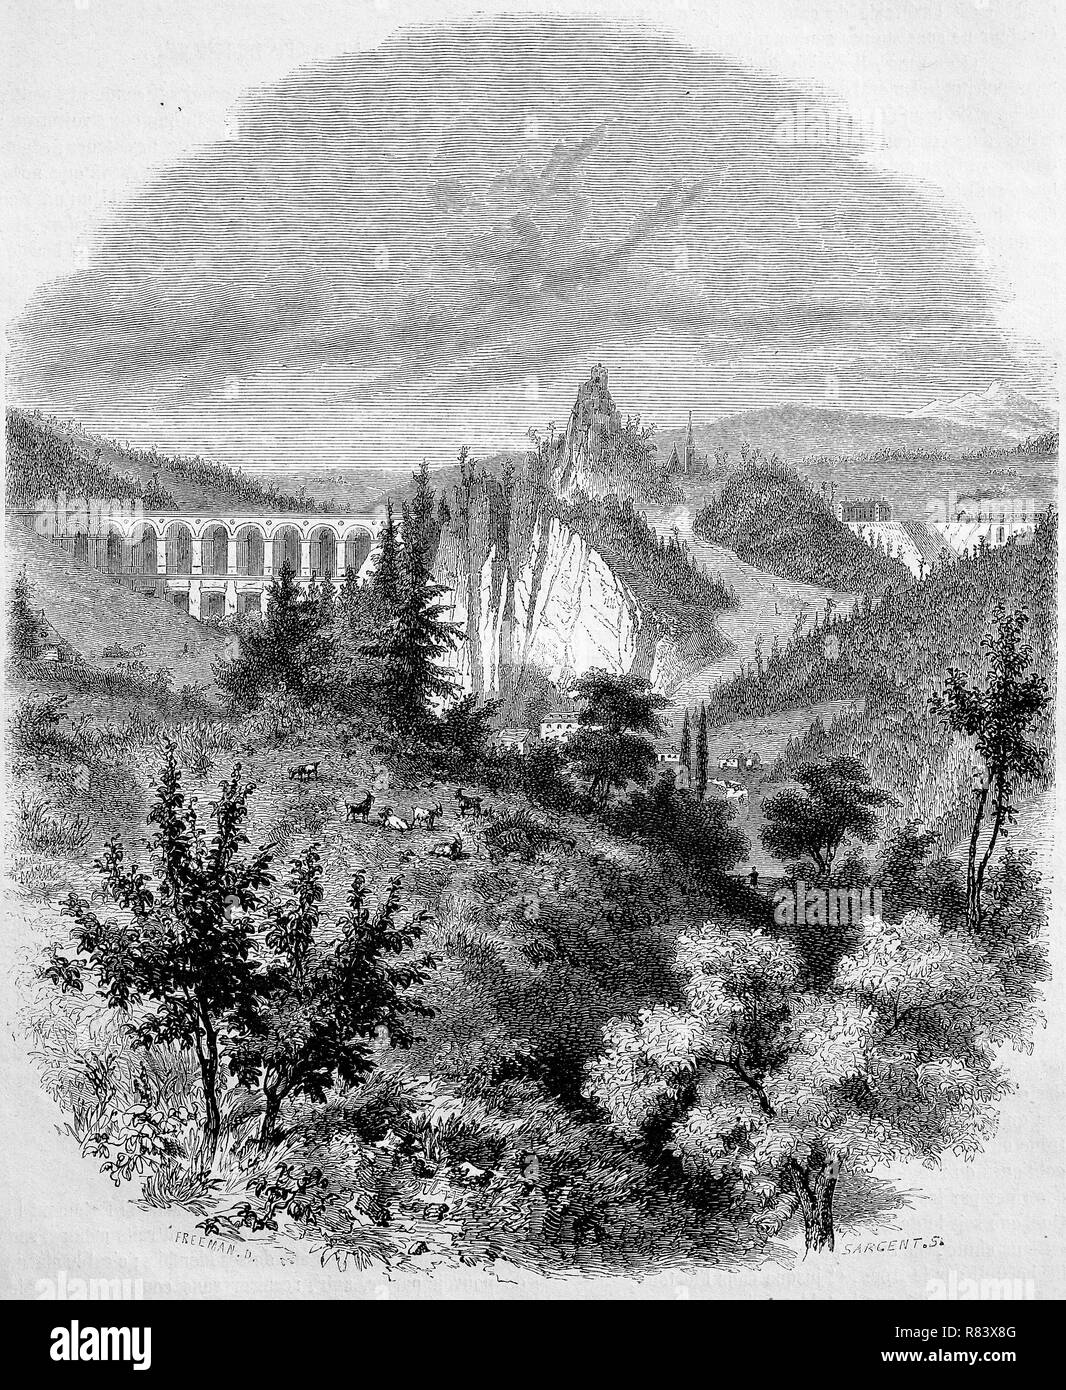 Mejor reproducción digital, el puente de ferrocarril de Semmering con paisaje montañoso circundante, Burg Clam, Upper Austria, Austria, desde una impresión original desde el año 1855 Foto de stock